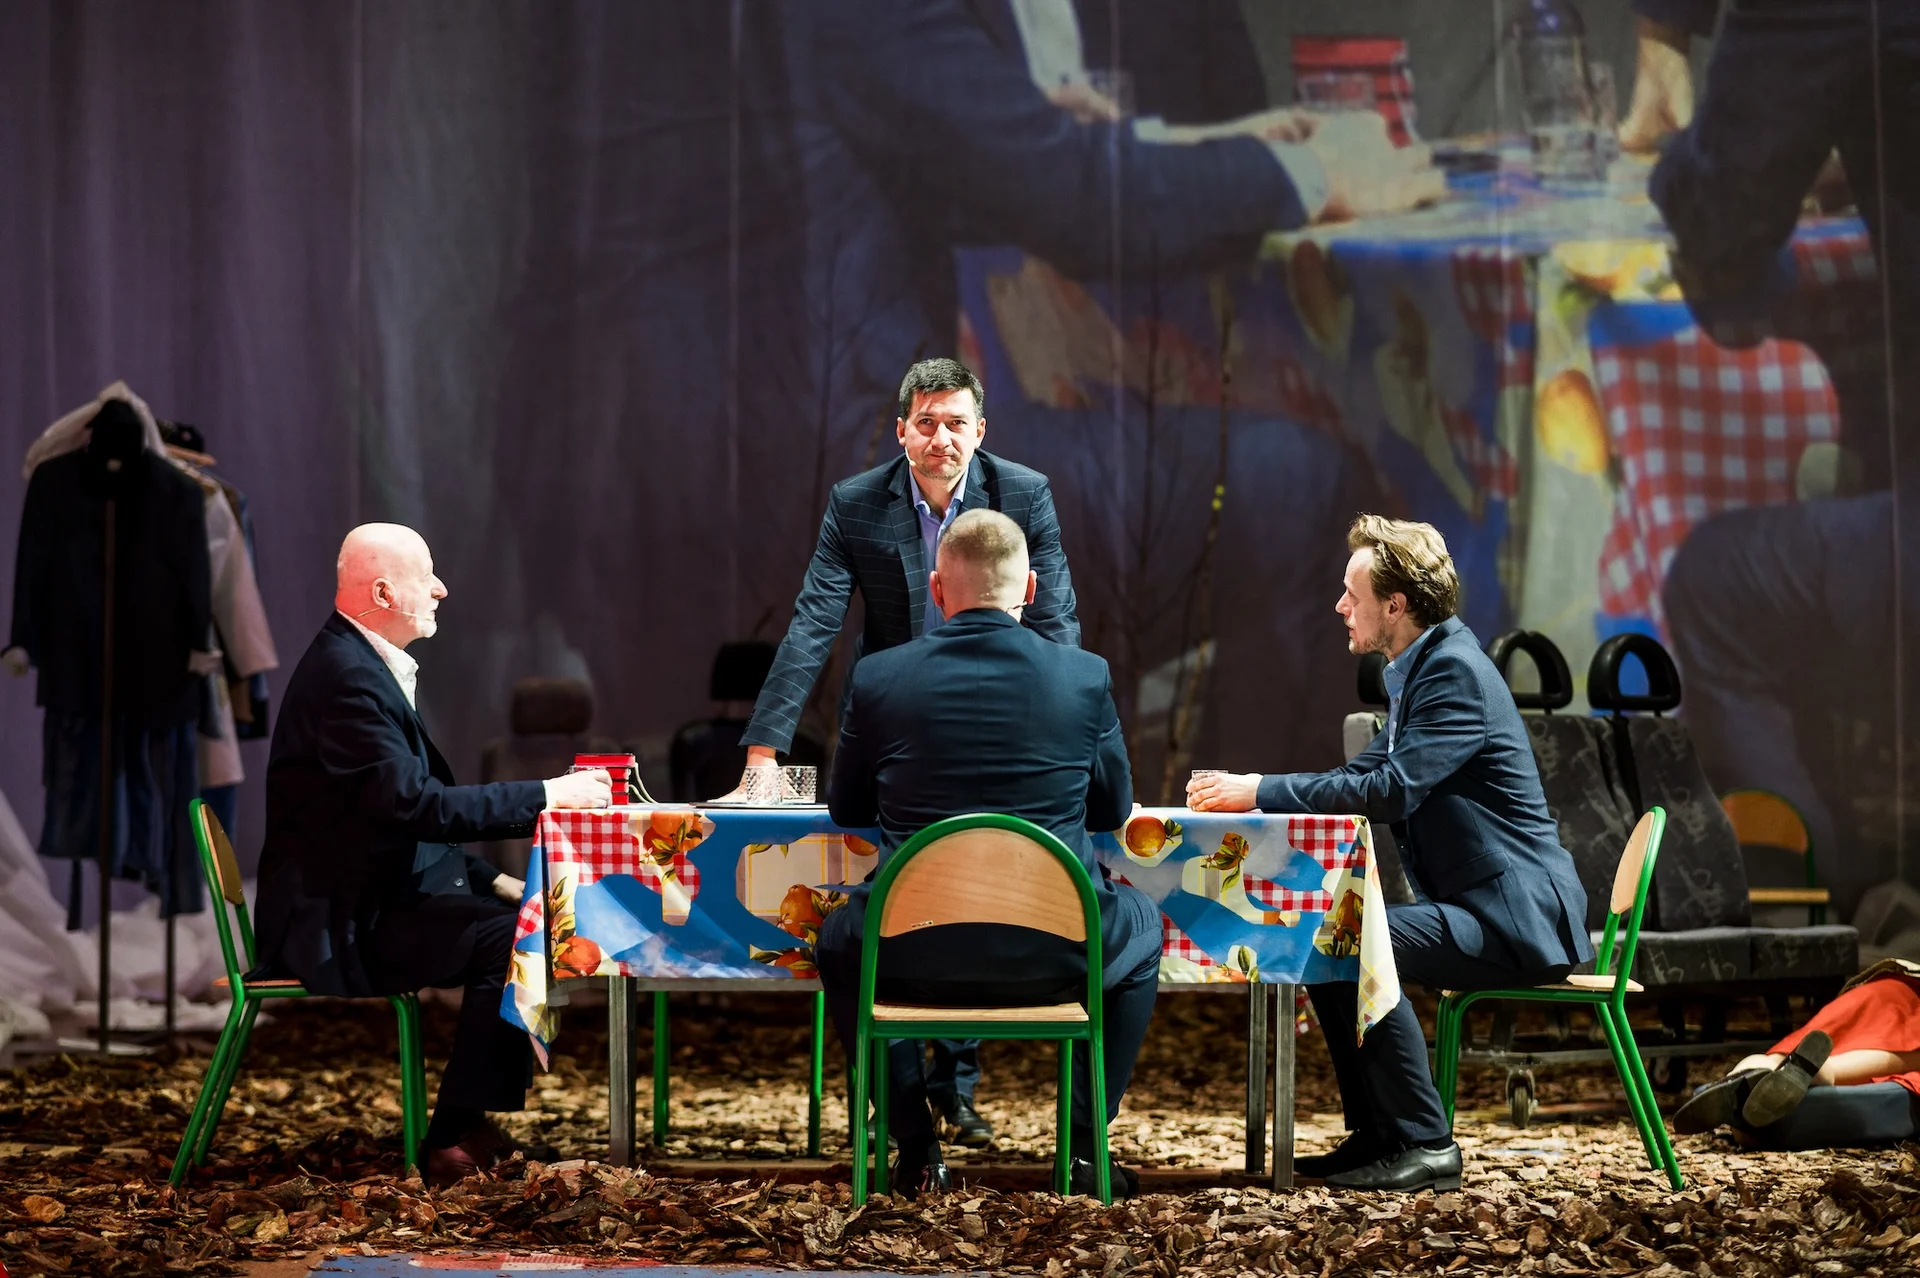 Czterech aktorów w garniturach siedzących przy stole. Jeden z nich wstał, oparł ręce na stole i patrzy na publiczność.